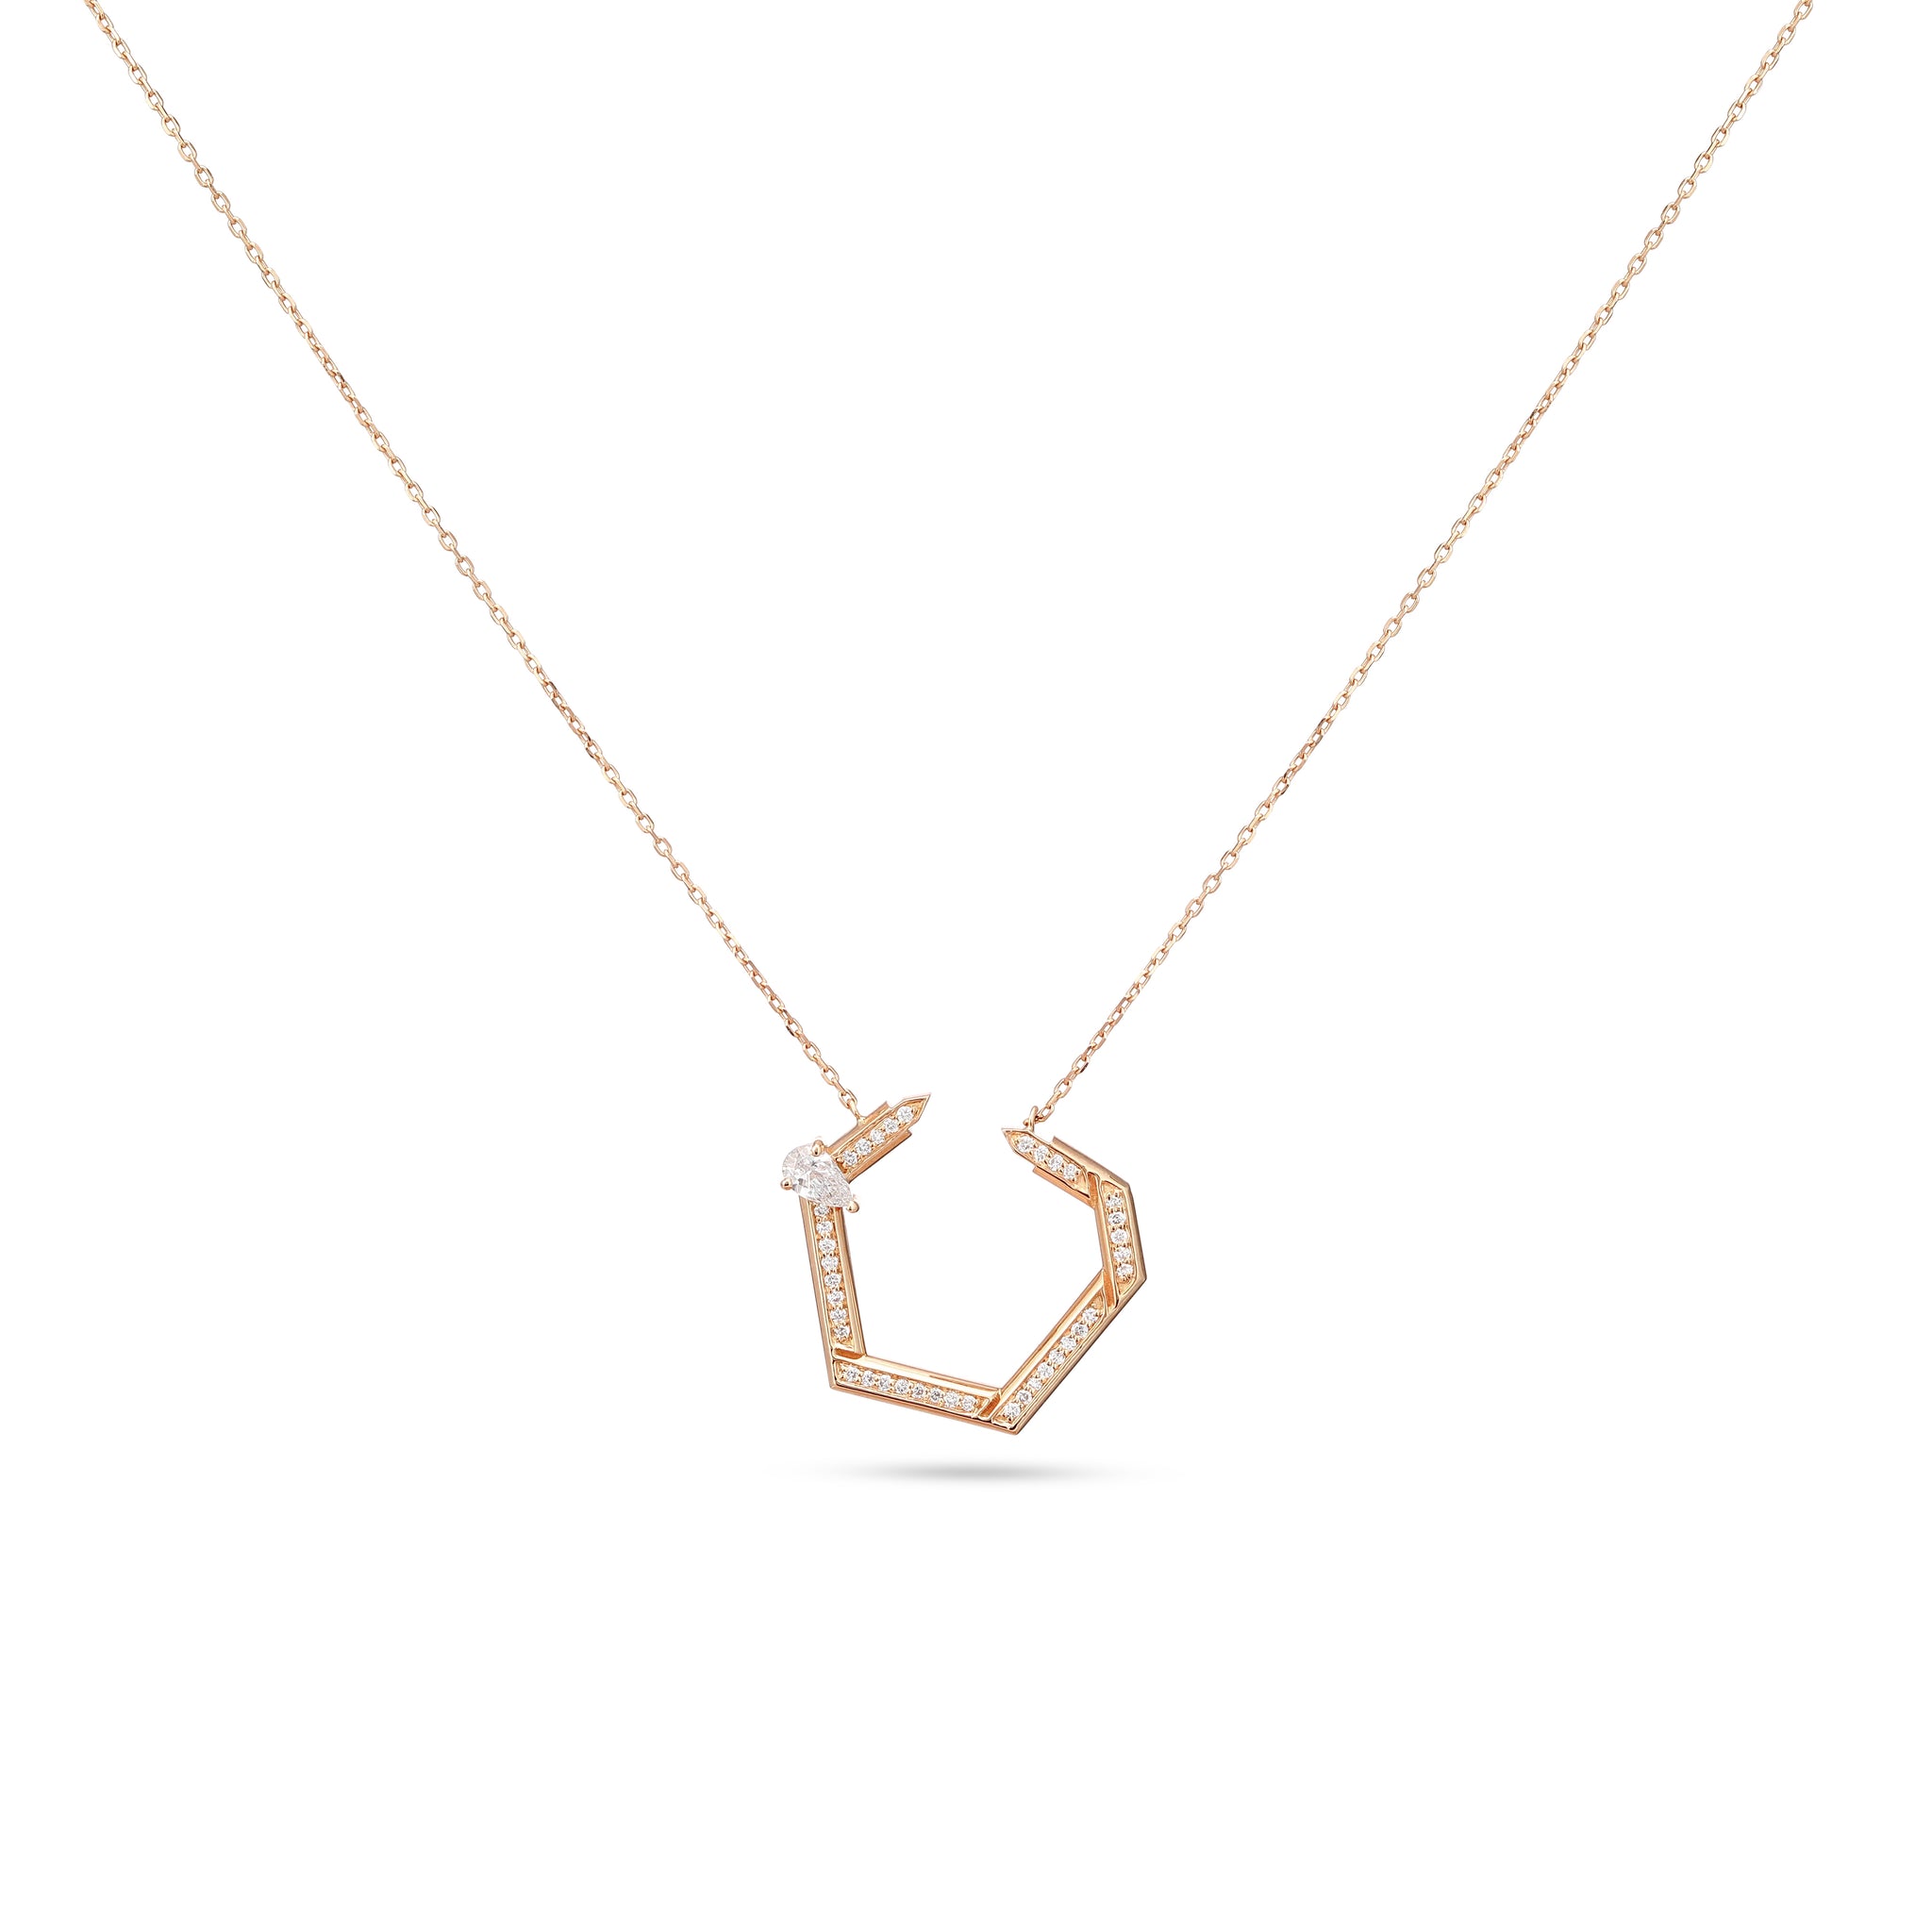 Hexad Diamond Necklace